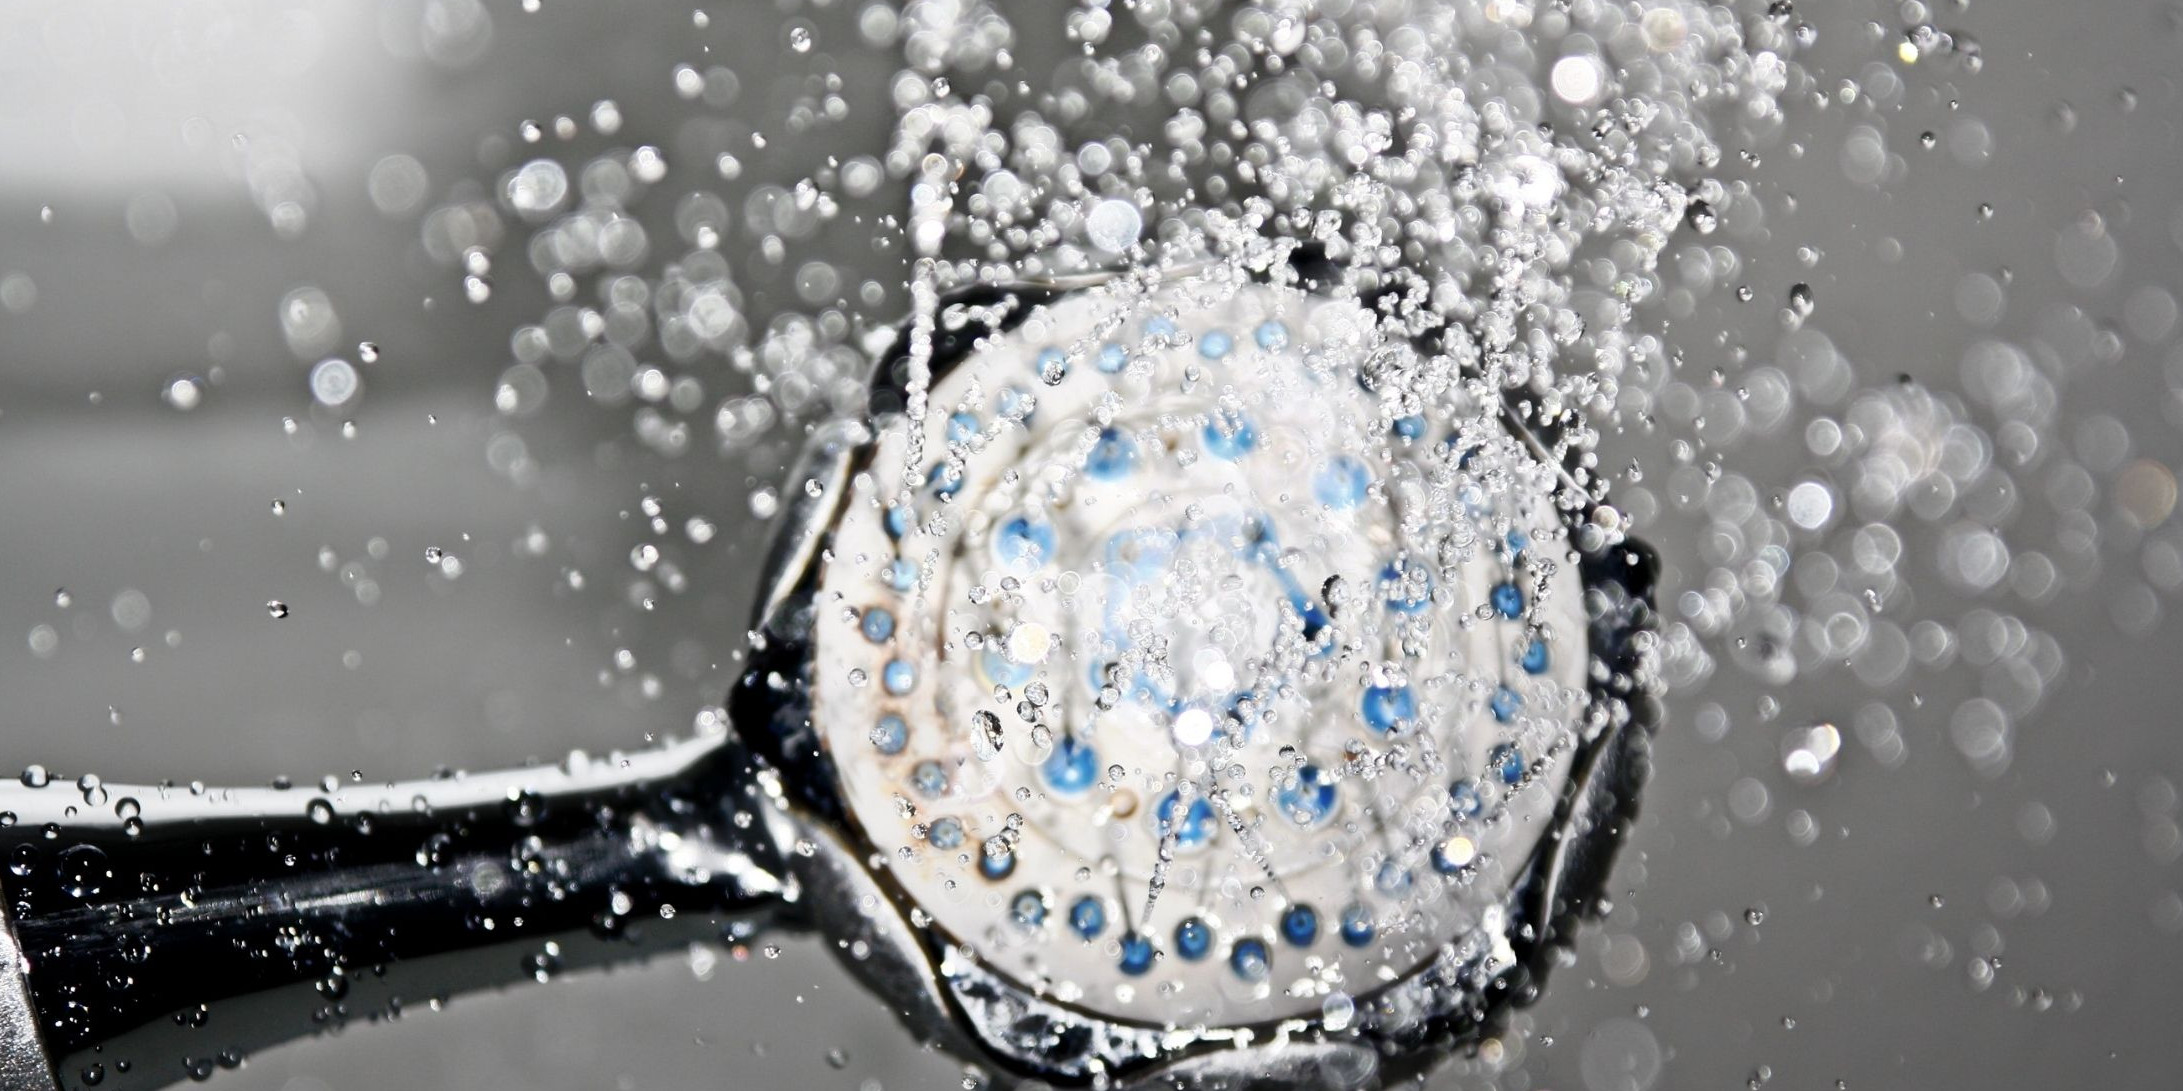 5 Manfaat mandi air dingin bagi kesehatan tubuh